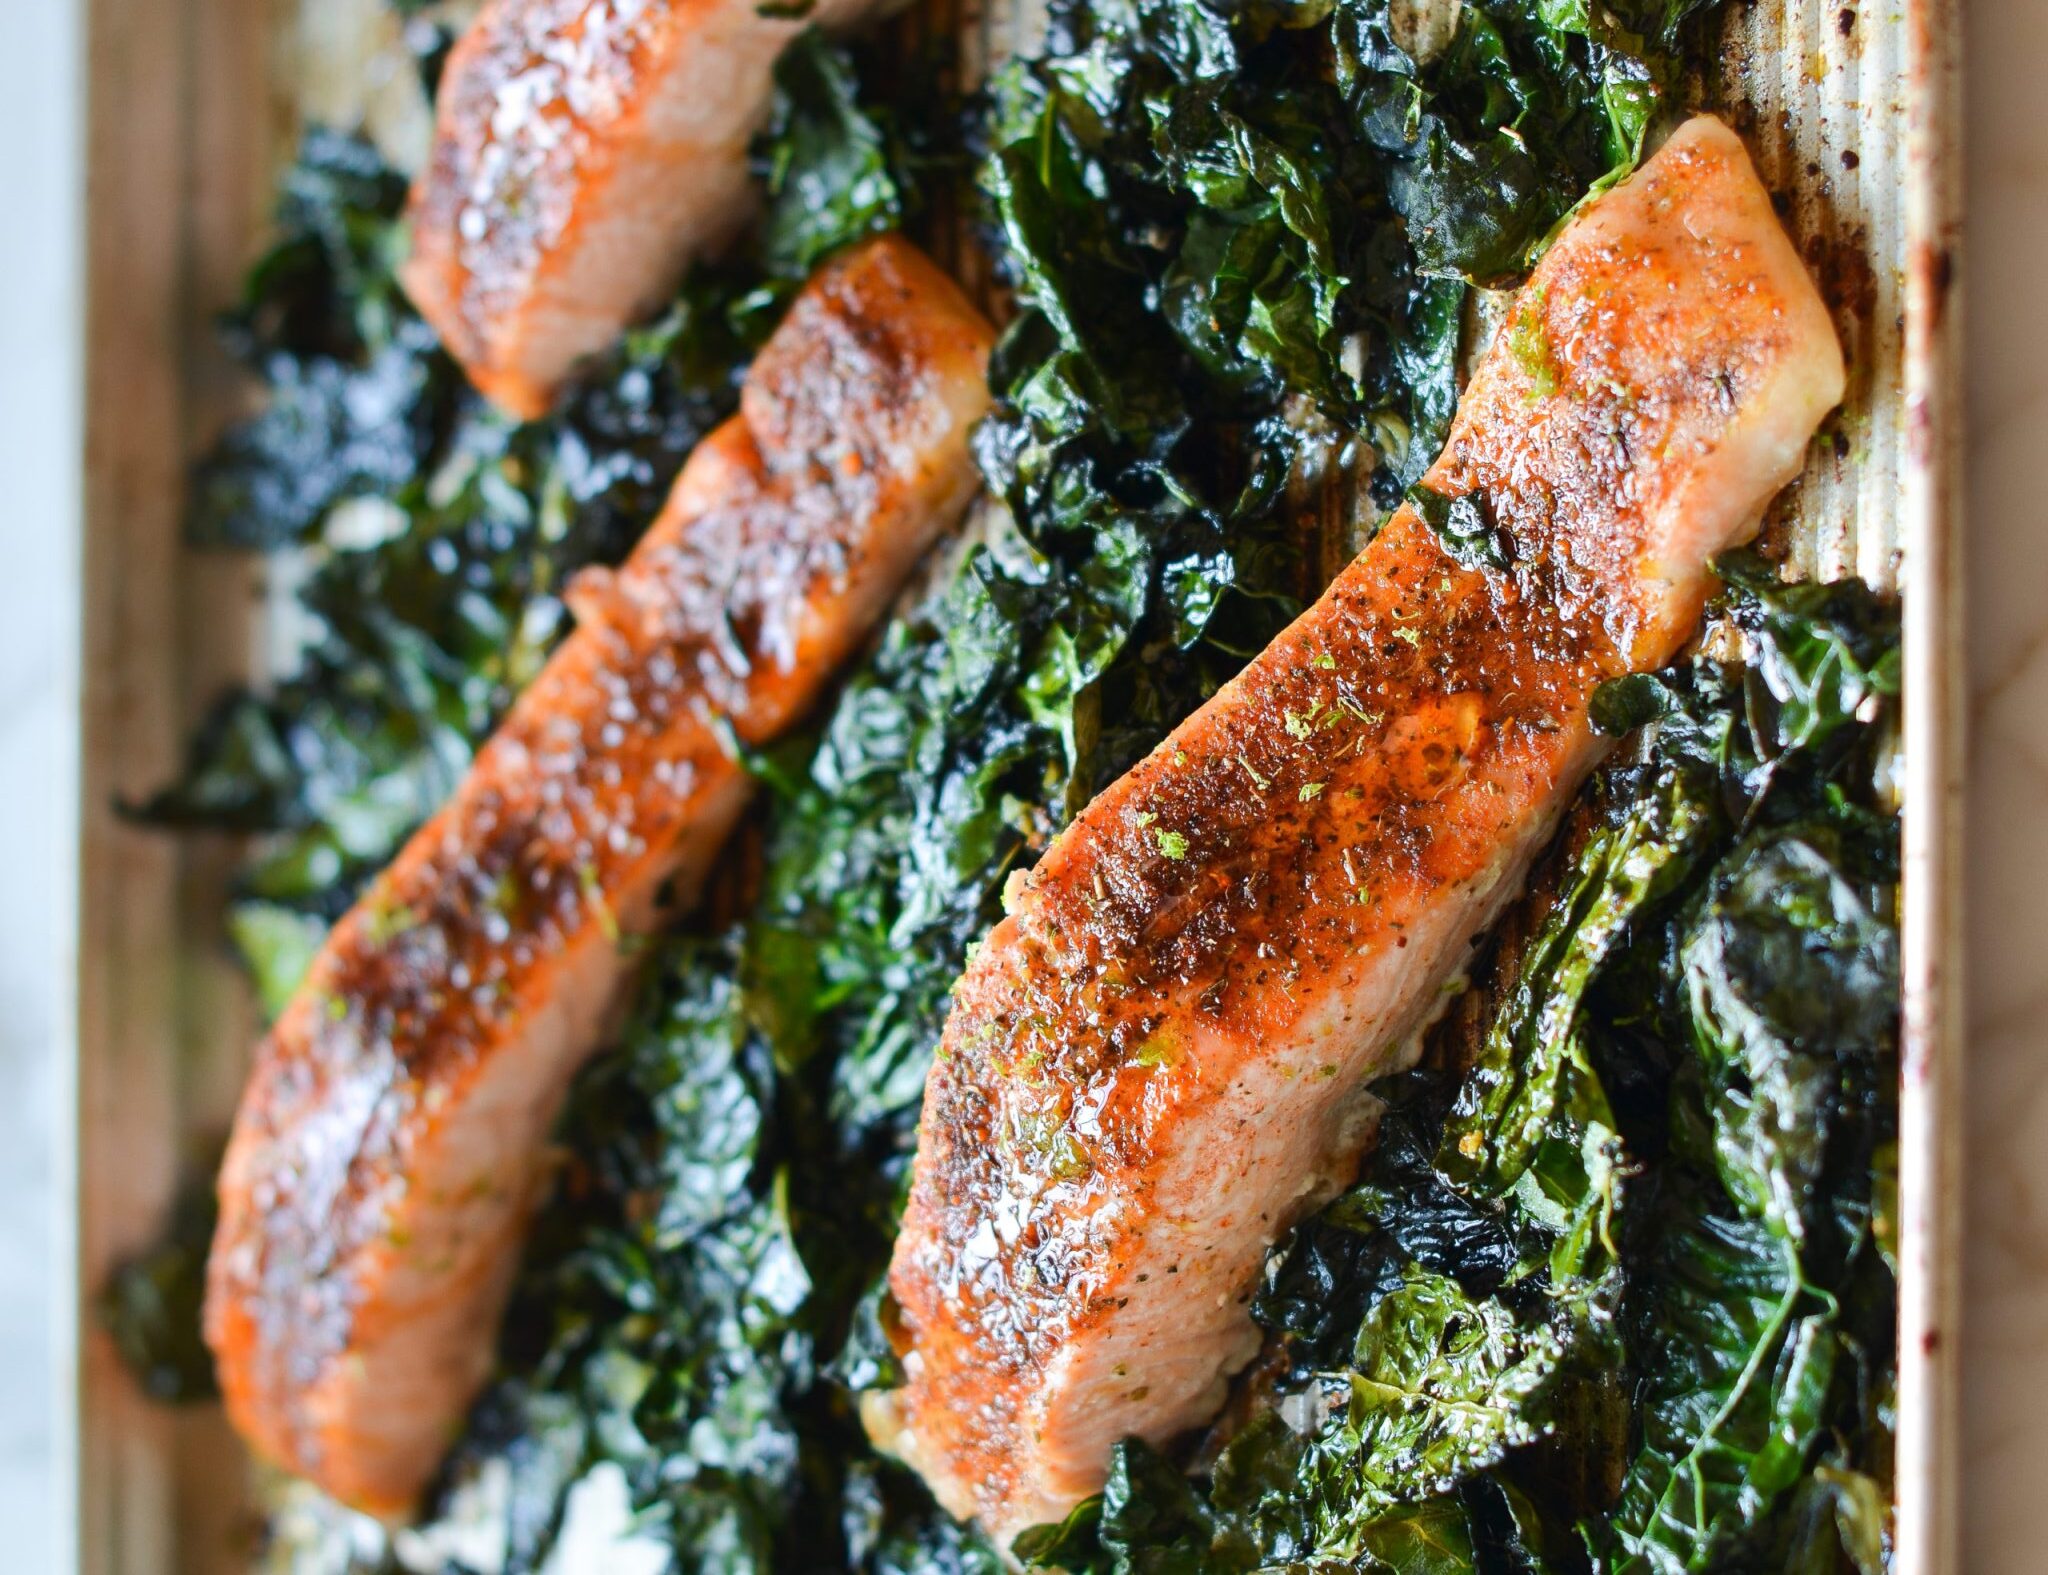 Sheet-Pan Blackened Salmon with Garlicky Kale